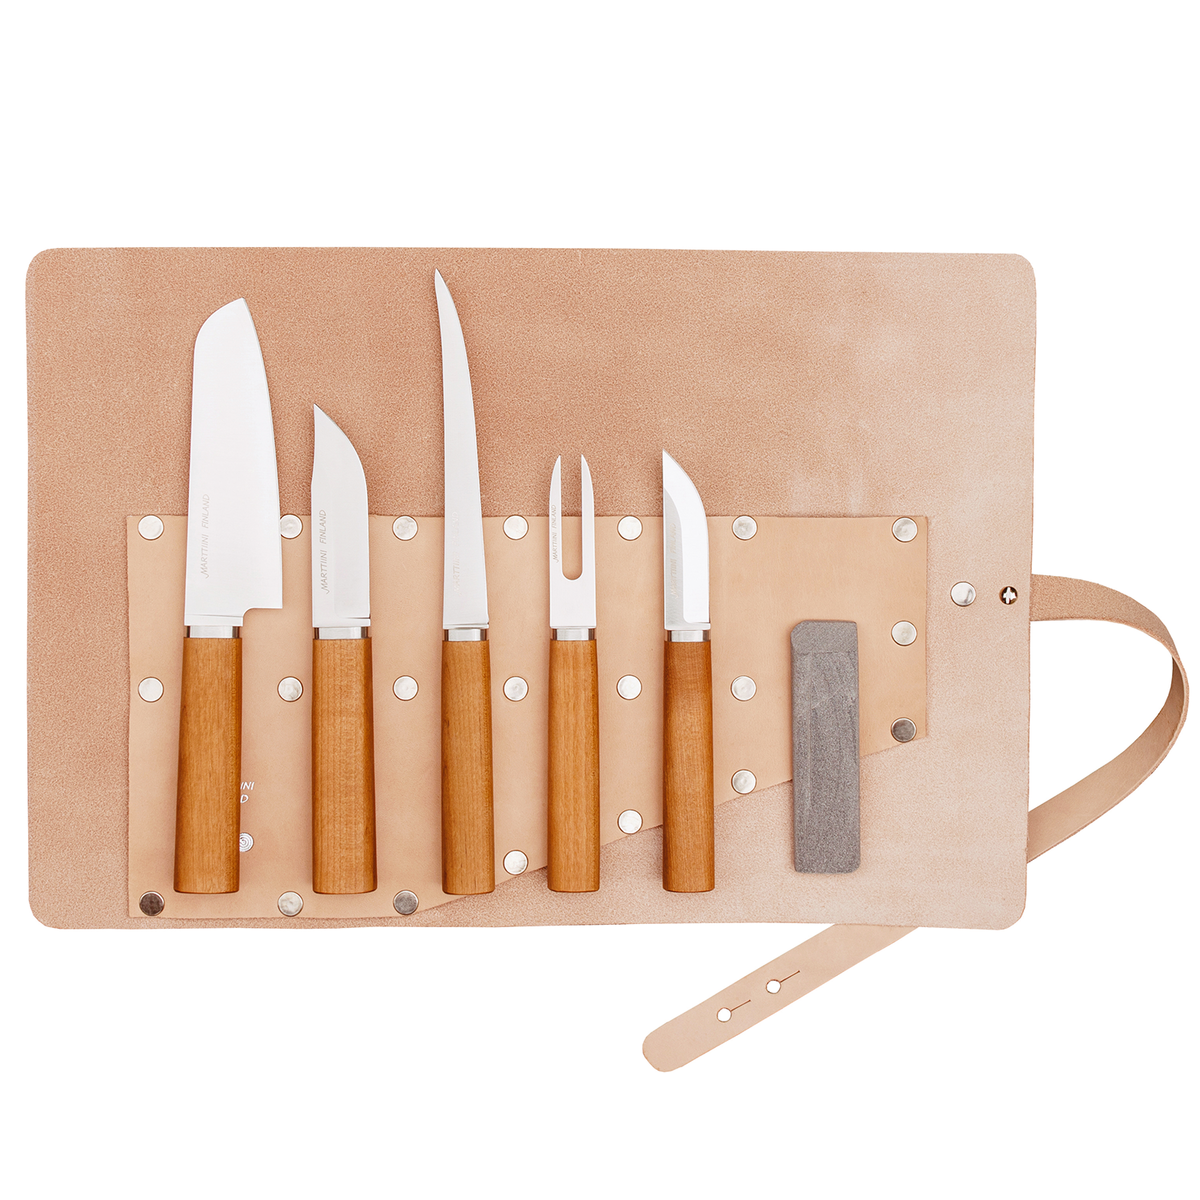 Marttiini Cabin Chef knife set | Finnish Design Shop